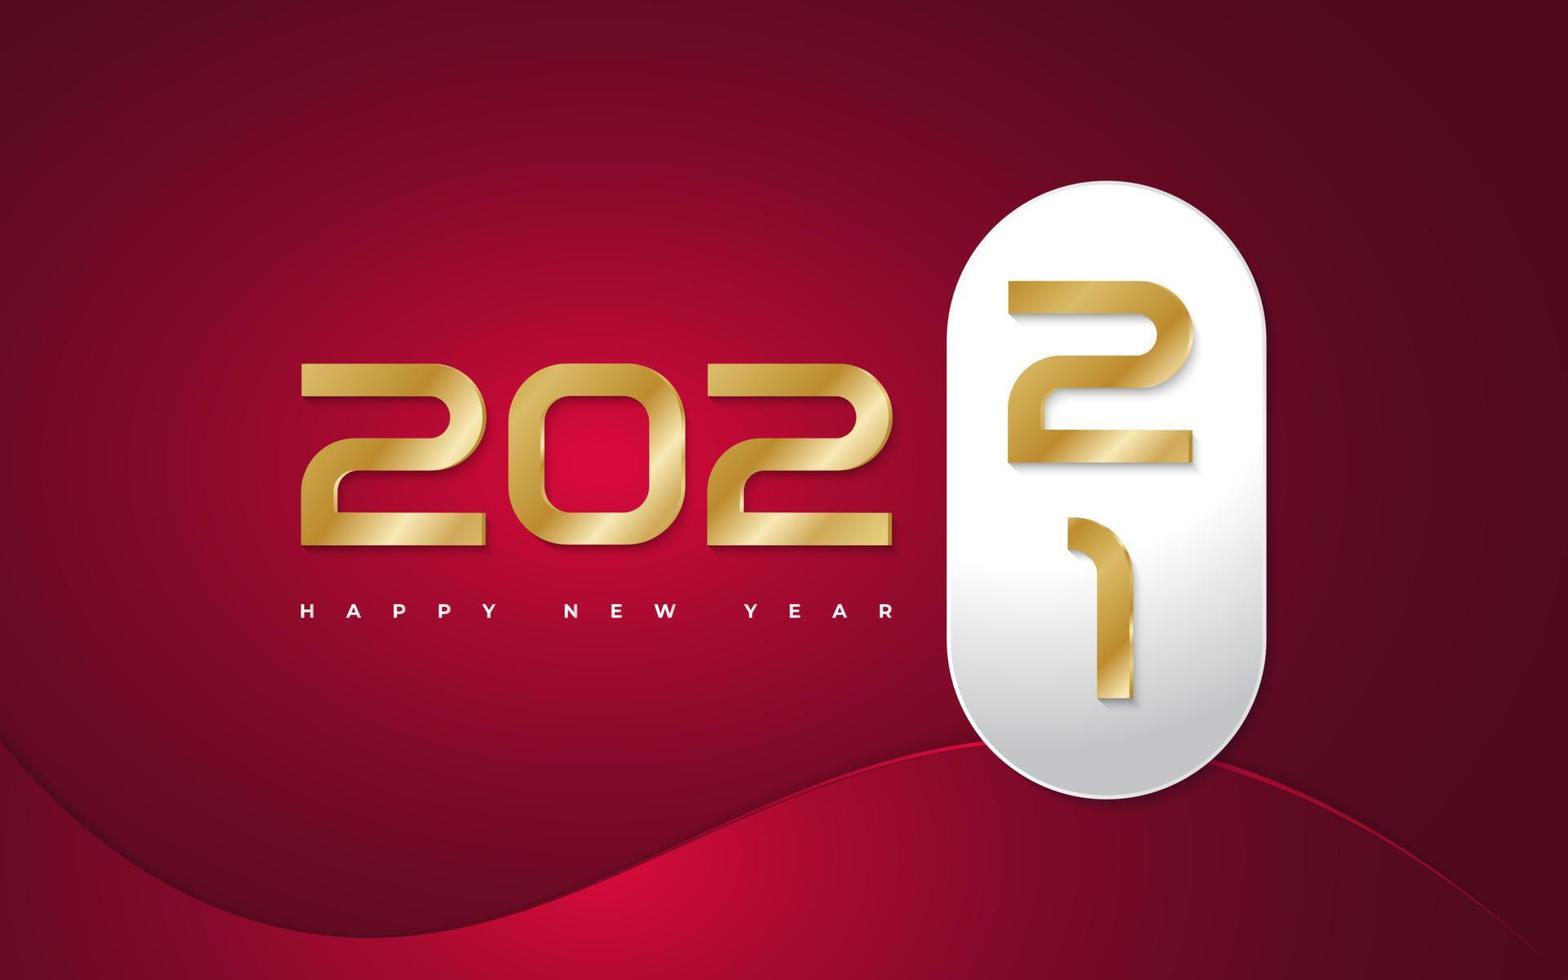 Frohes neues Jahr 2022 Banner- oder Posterdesign mit goldenen Zahlen auf rotem Hintergrund. Banner zum Wechsel des neuen Jahres. Designvorlage für die Neujahrsfeier für Flyer, Poster, Broschüren, Karten, Banner oder Postkarten vektor